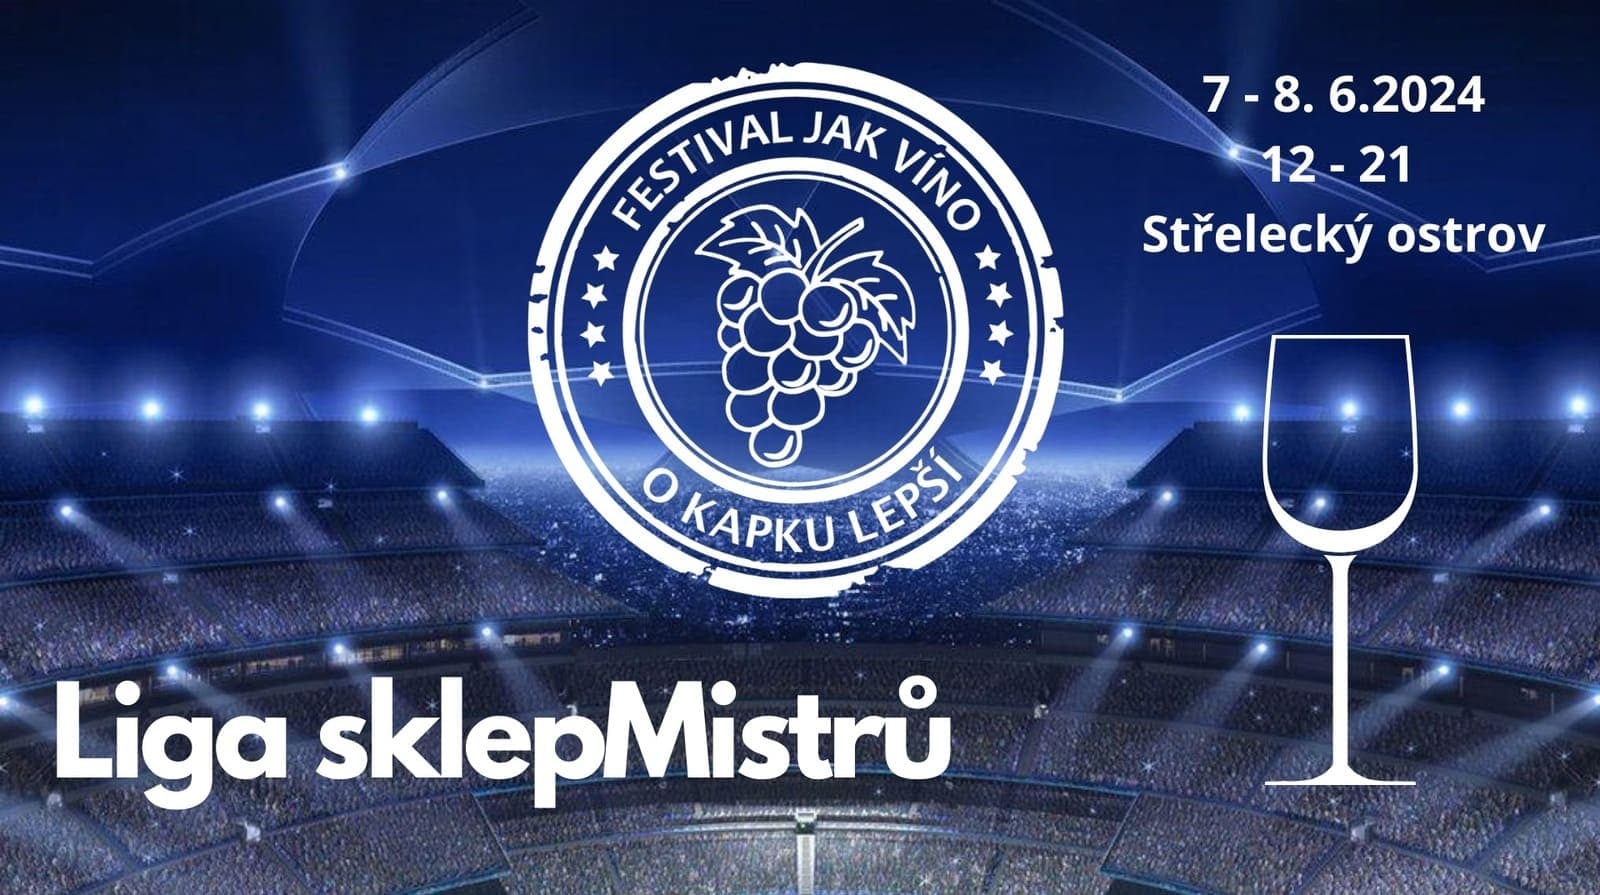 7 и 8 июня в Праге будет проходить фестиваль вина и турнир Liga sklepMistrů